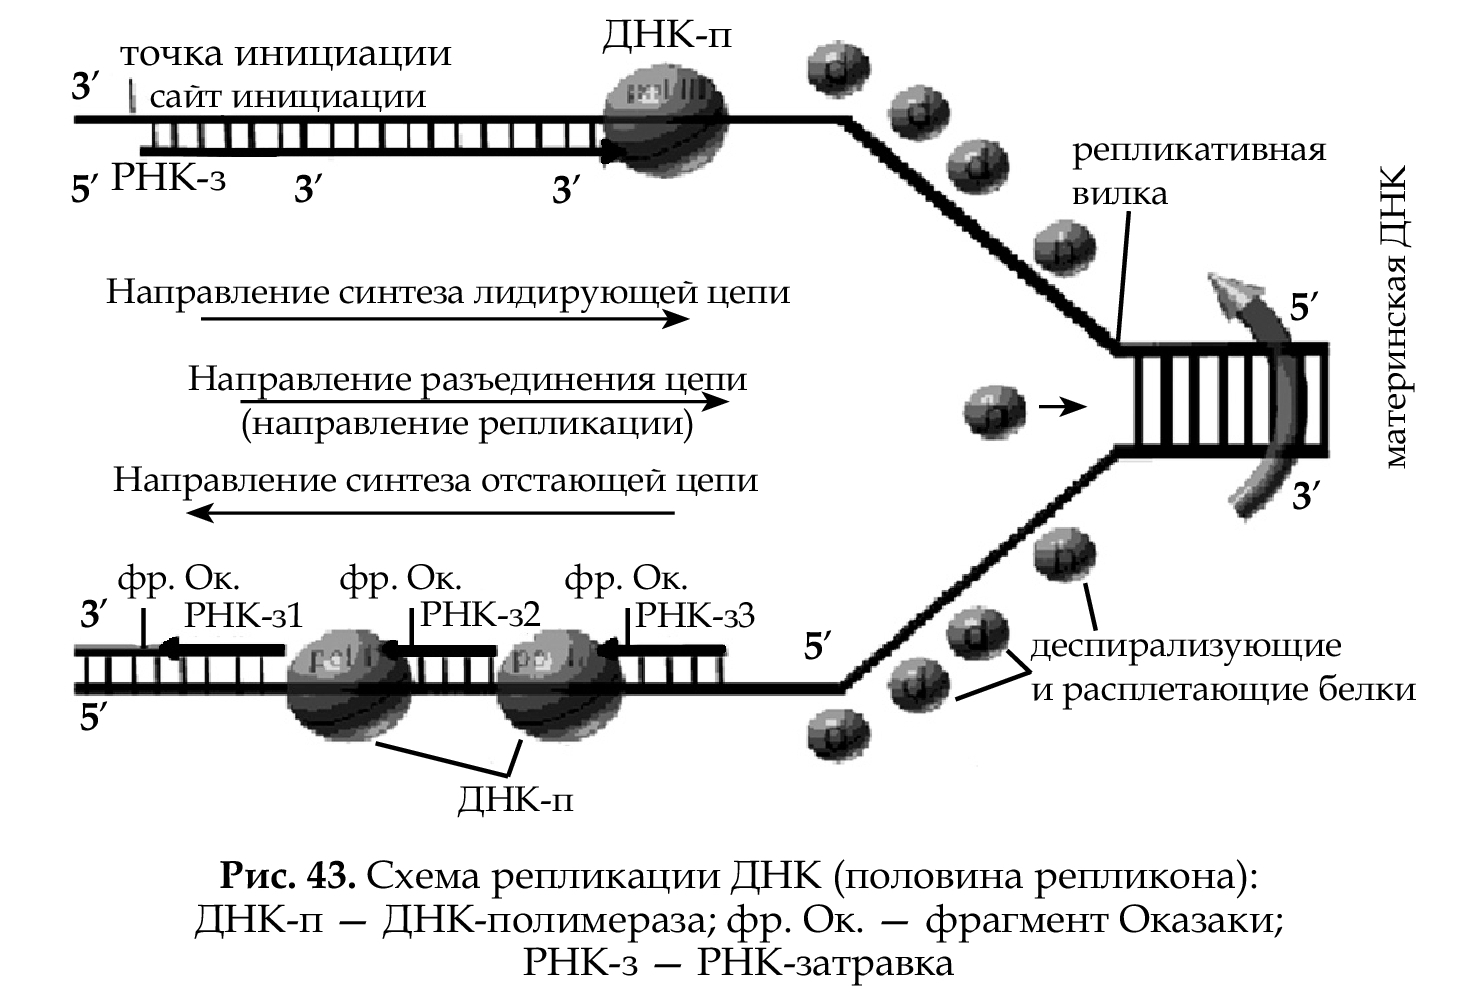 3 этапа репликации. Схема репликации ДНК эукариотических клеток. Схема репликации ДНК эукариот. Признаки репликации ДНК эукариот. Репликативная вилка эукариот.